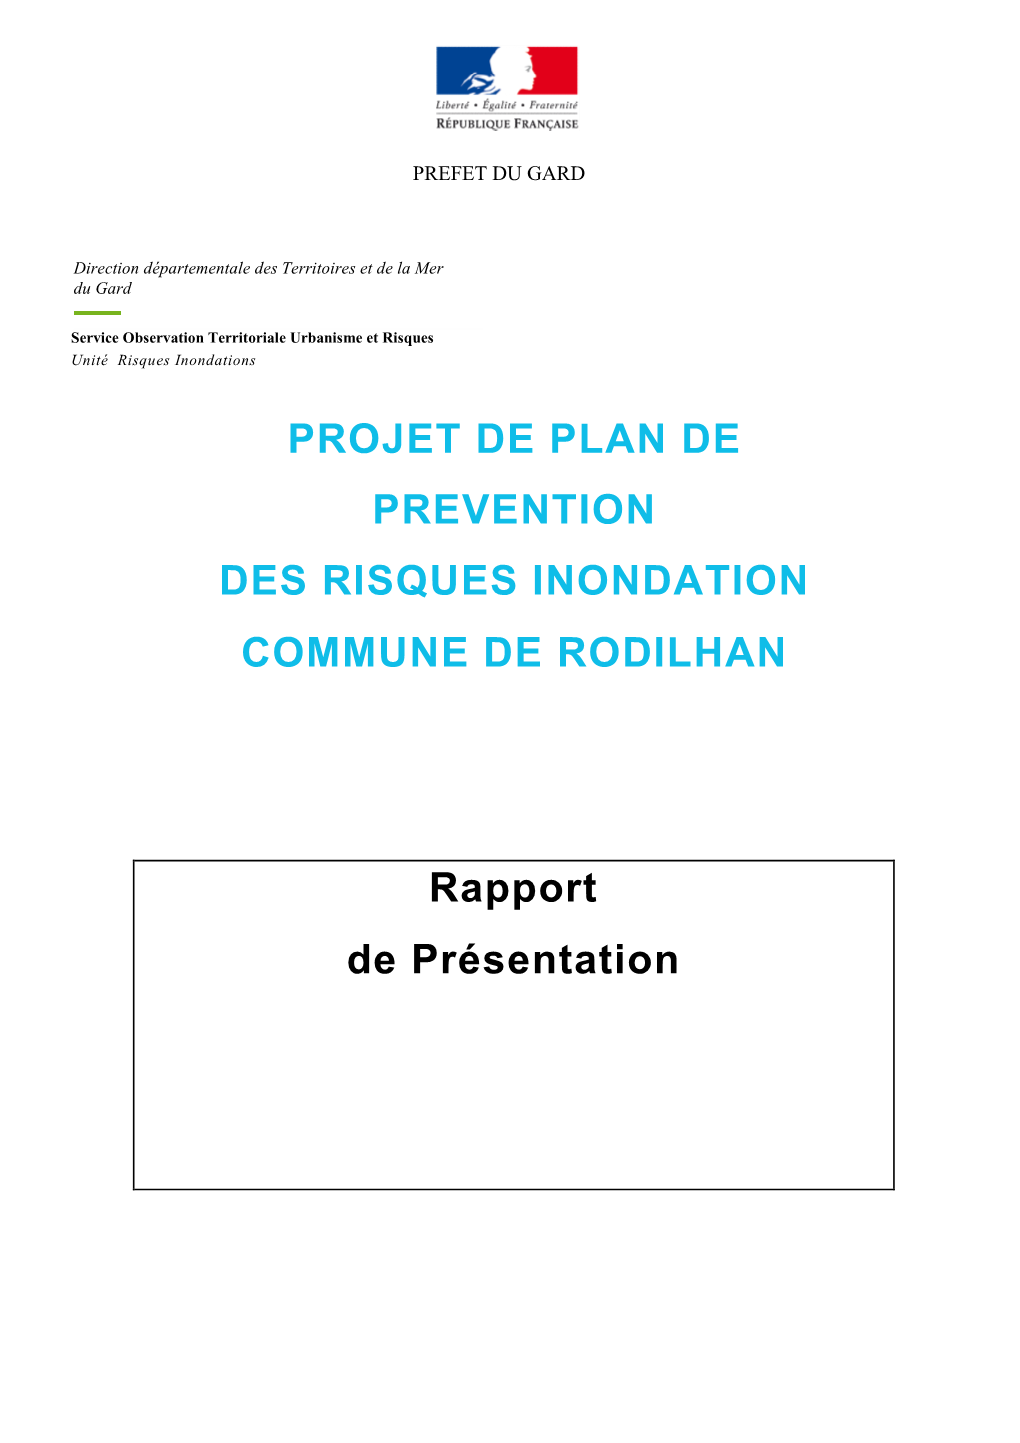 Rapport Présentation Rodilhan